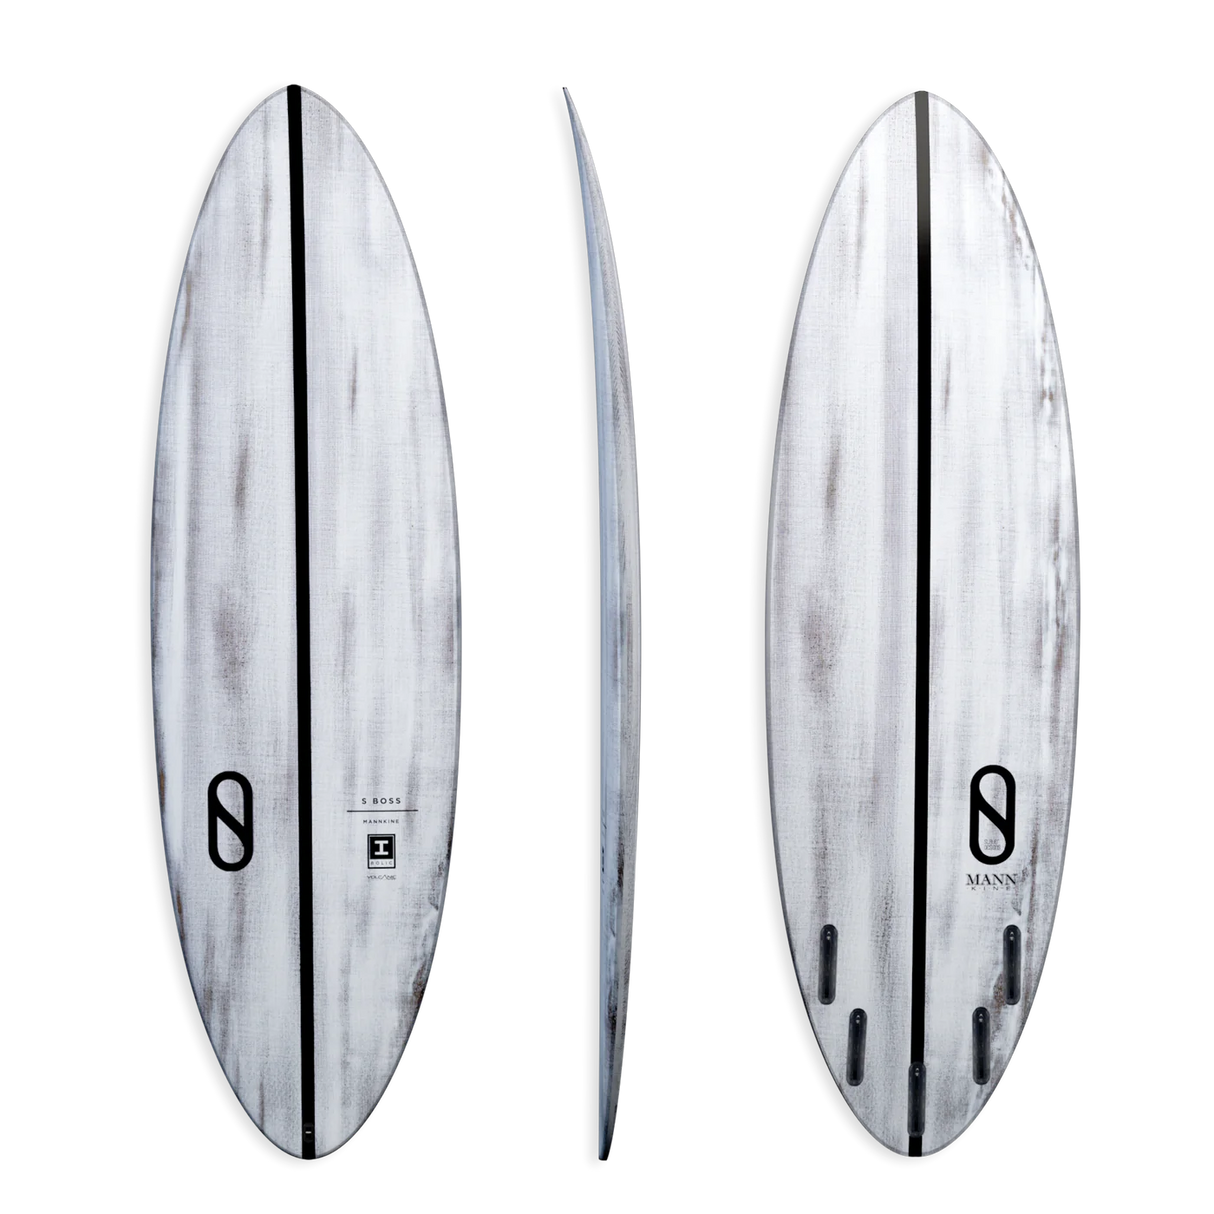 Slater Designs S Boss Volcanic Surfboard